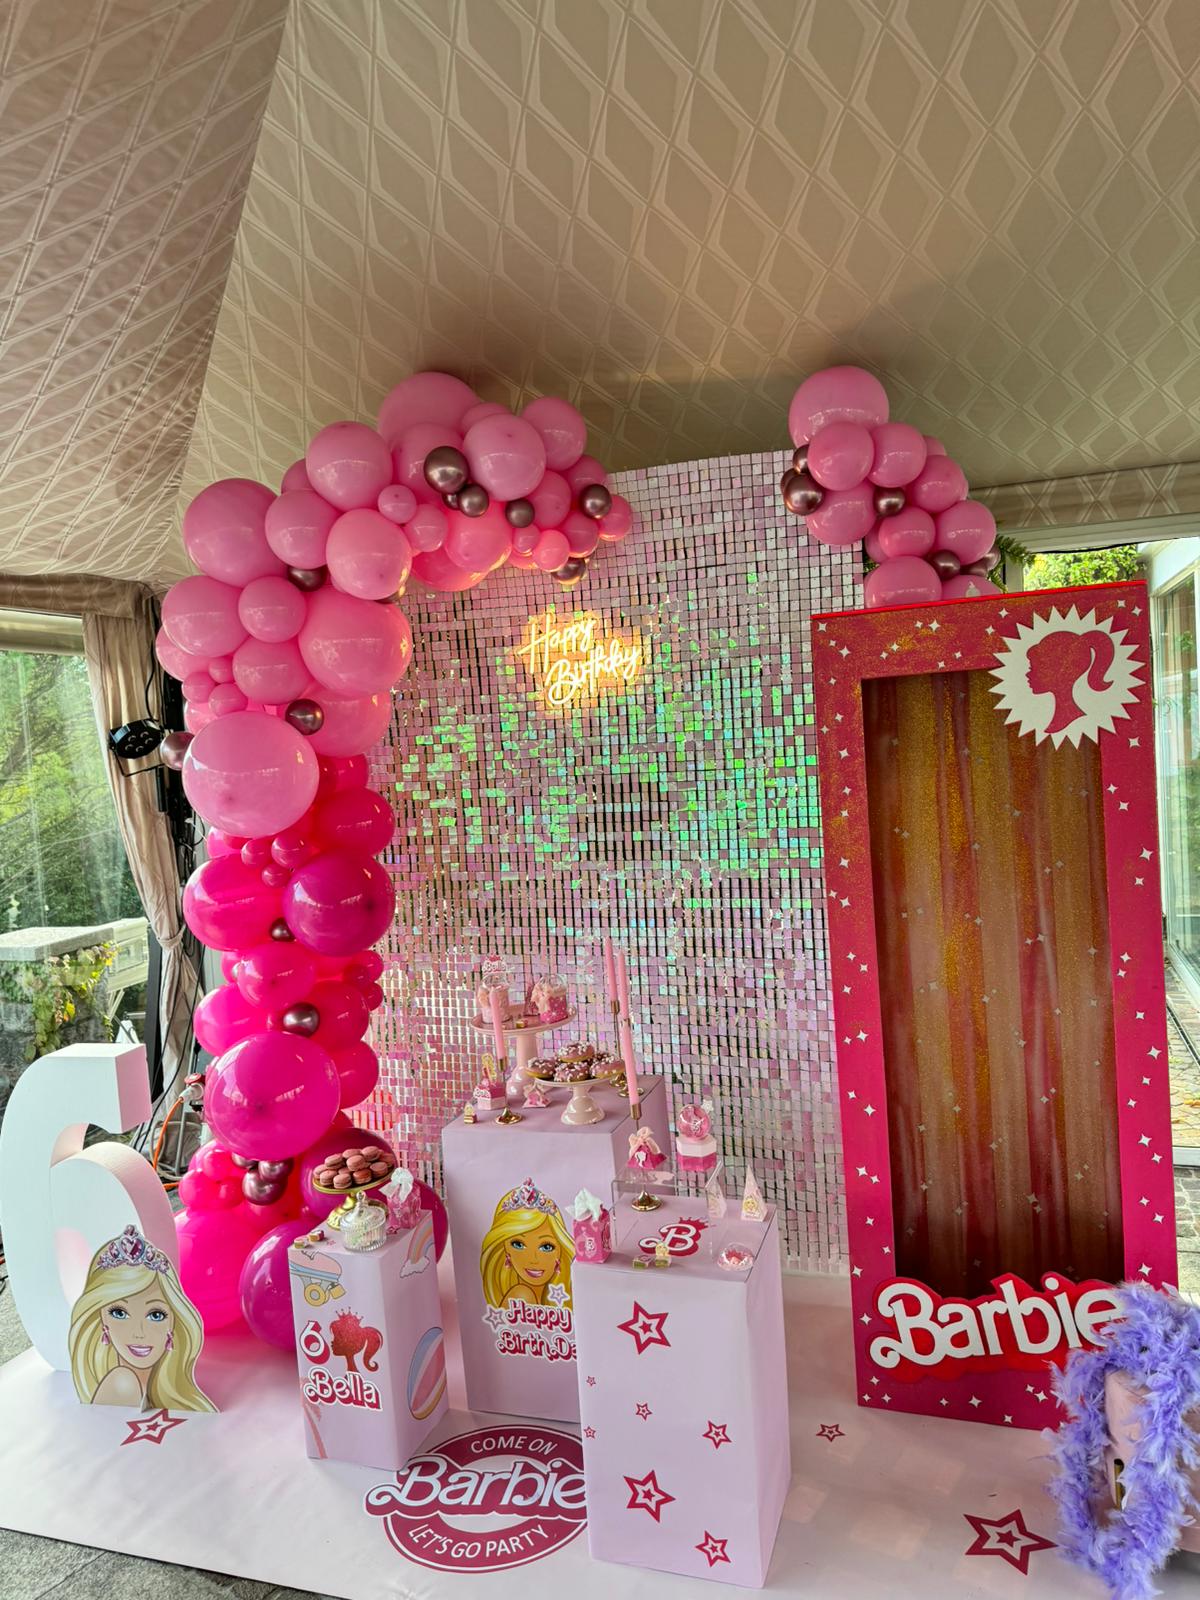 Barbie decorazioni a tema